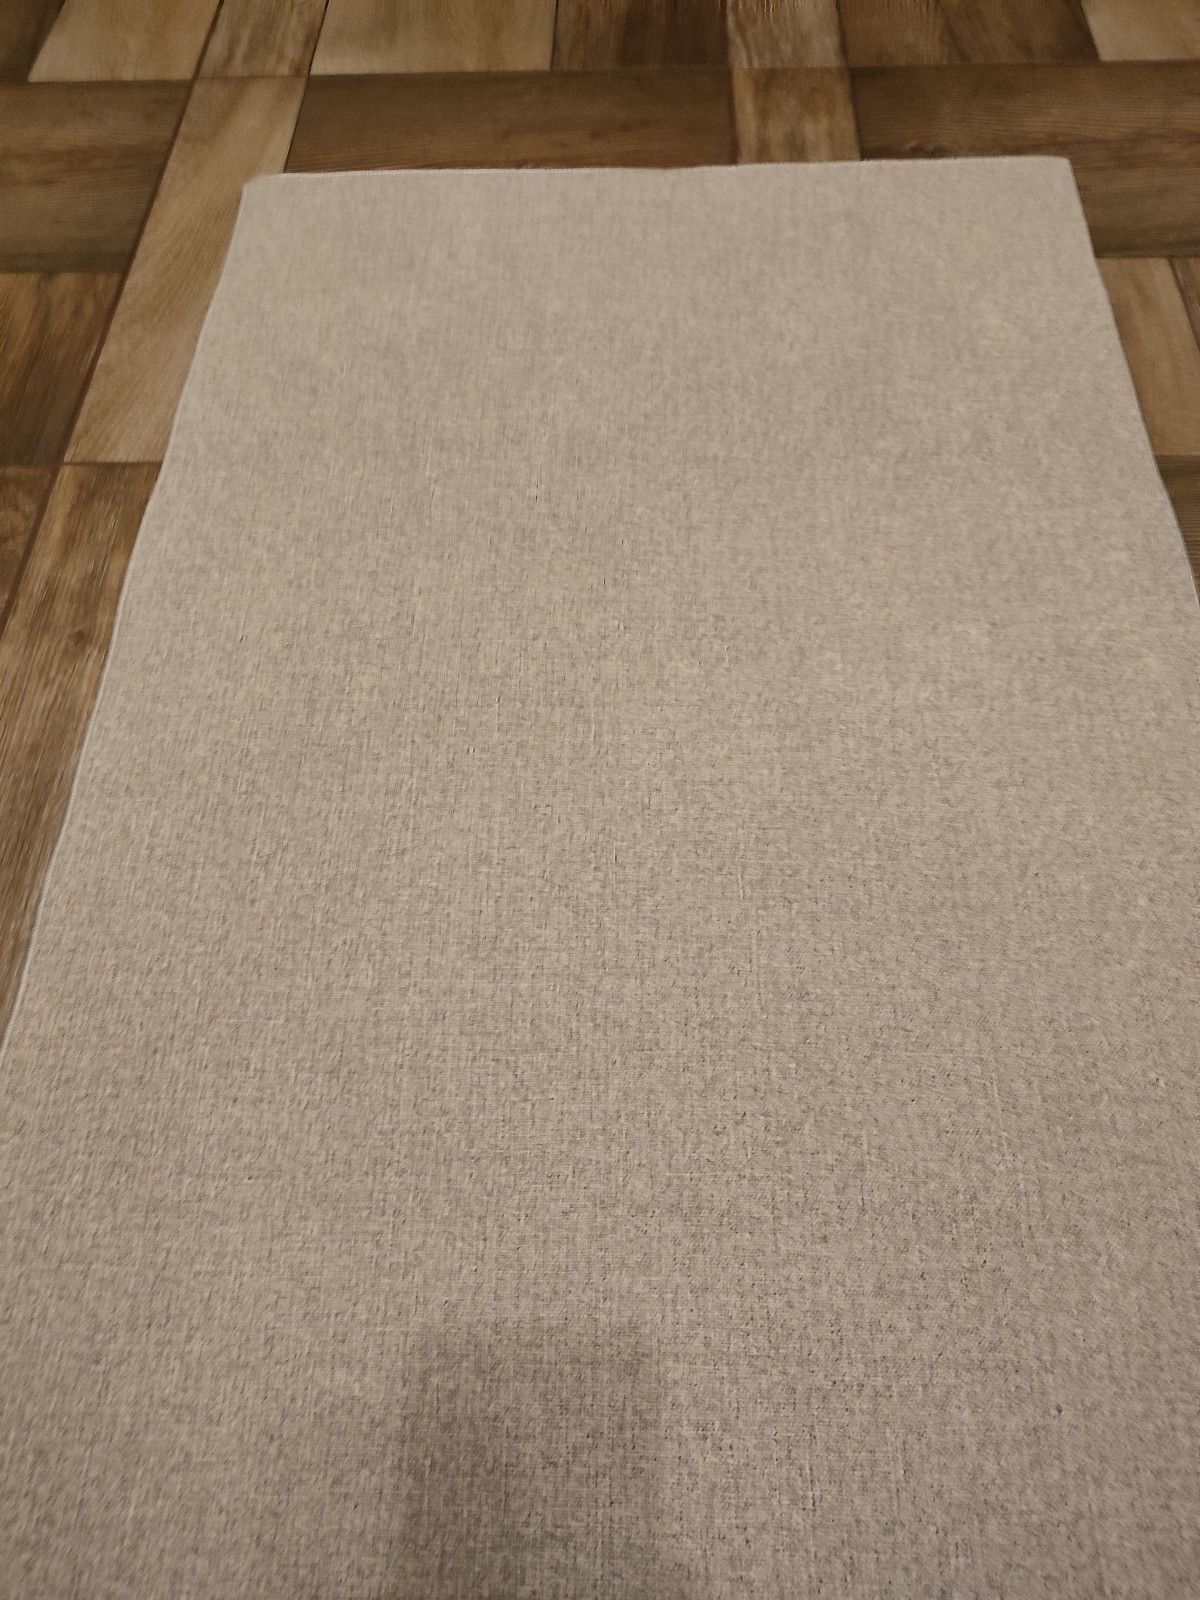 Nowy dywan do pokoju 60x100 cm Rośliny